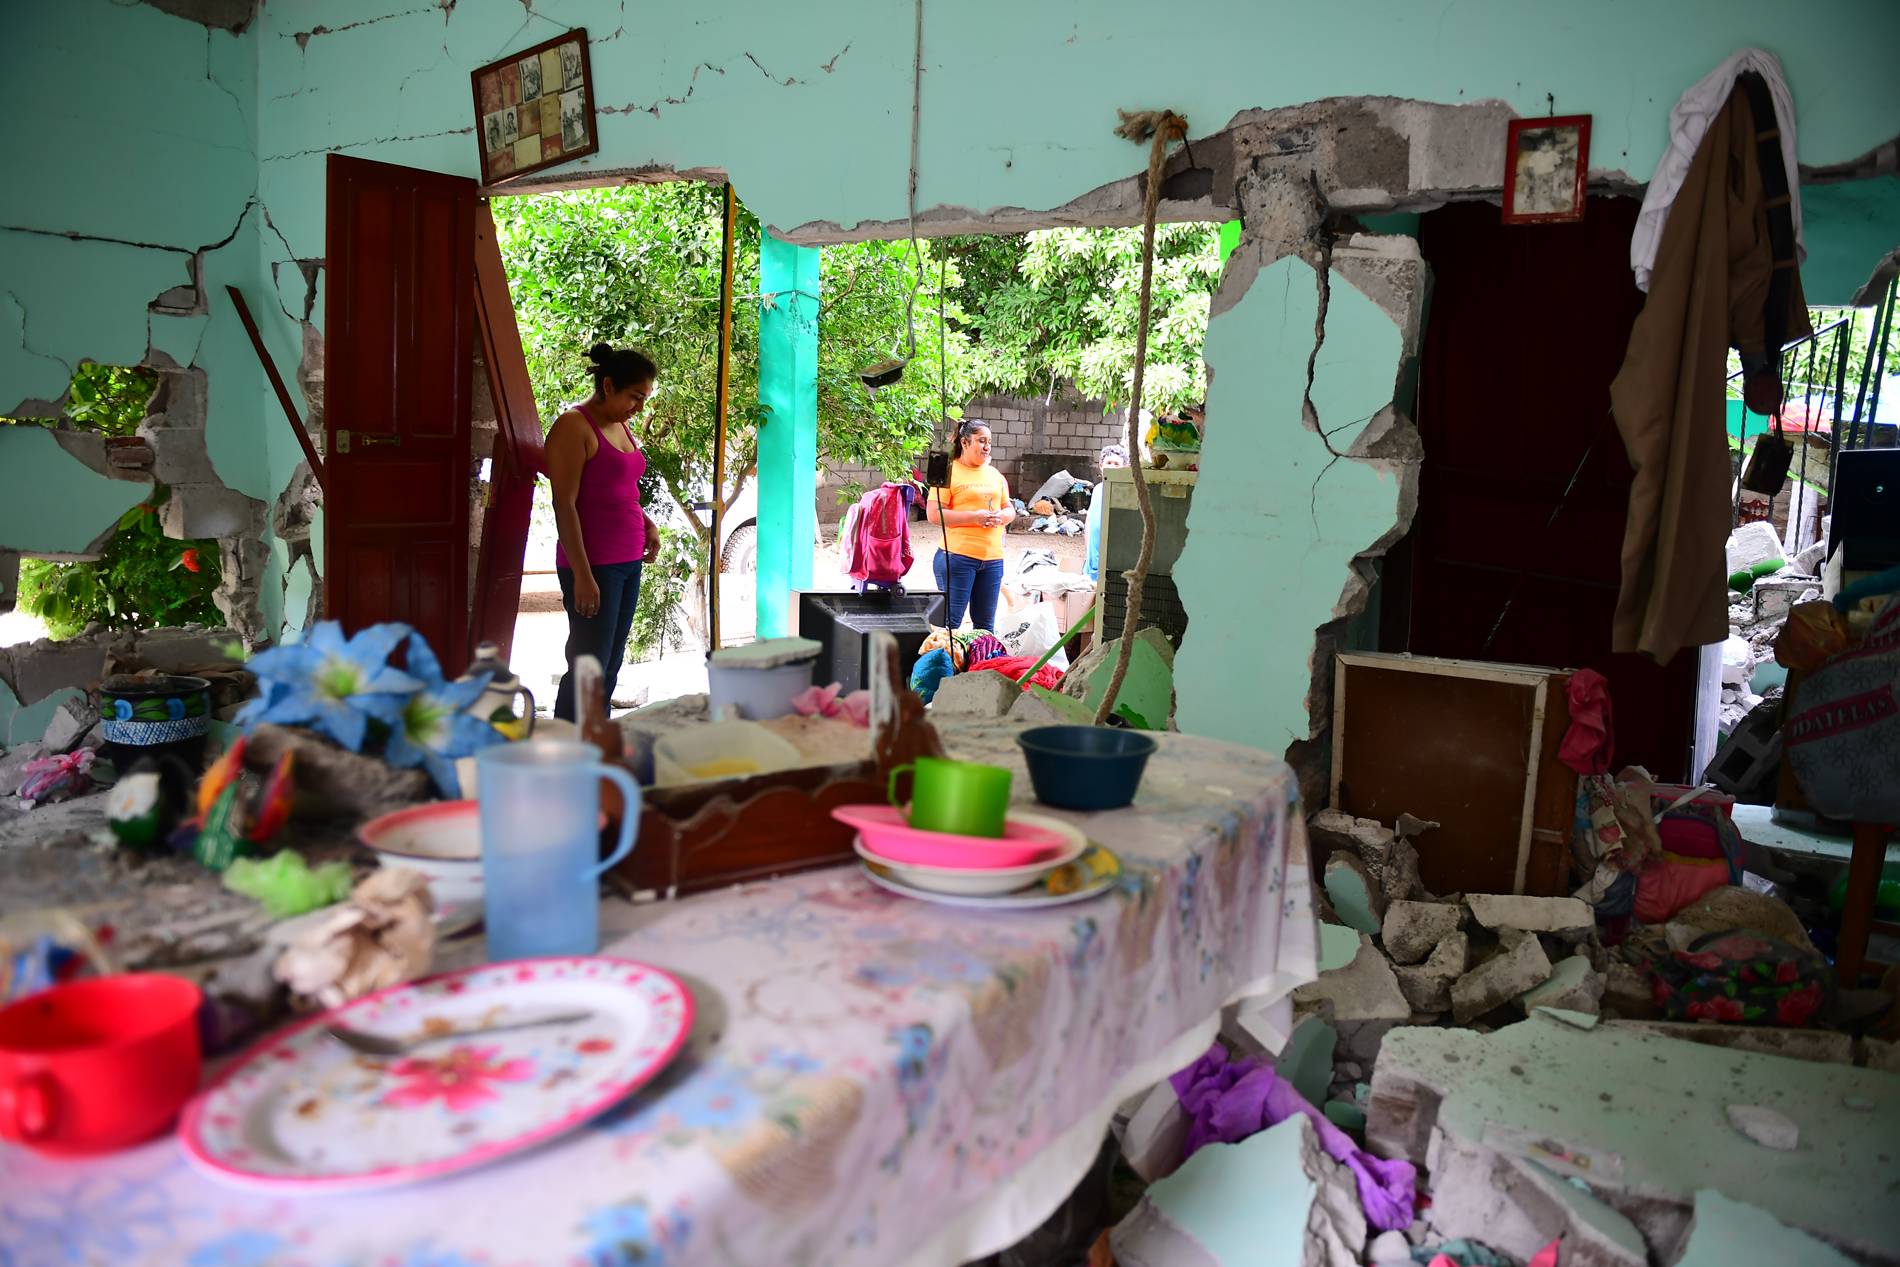 Casa gravemente danificada pelo terremoto, em Juchitan, Oaxaca, no México